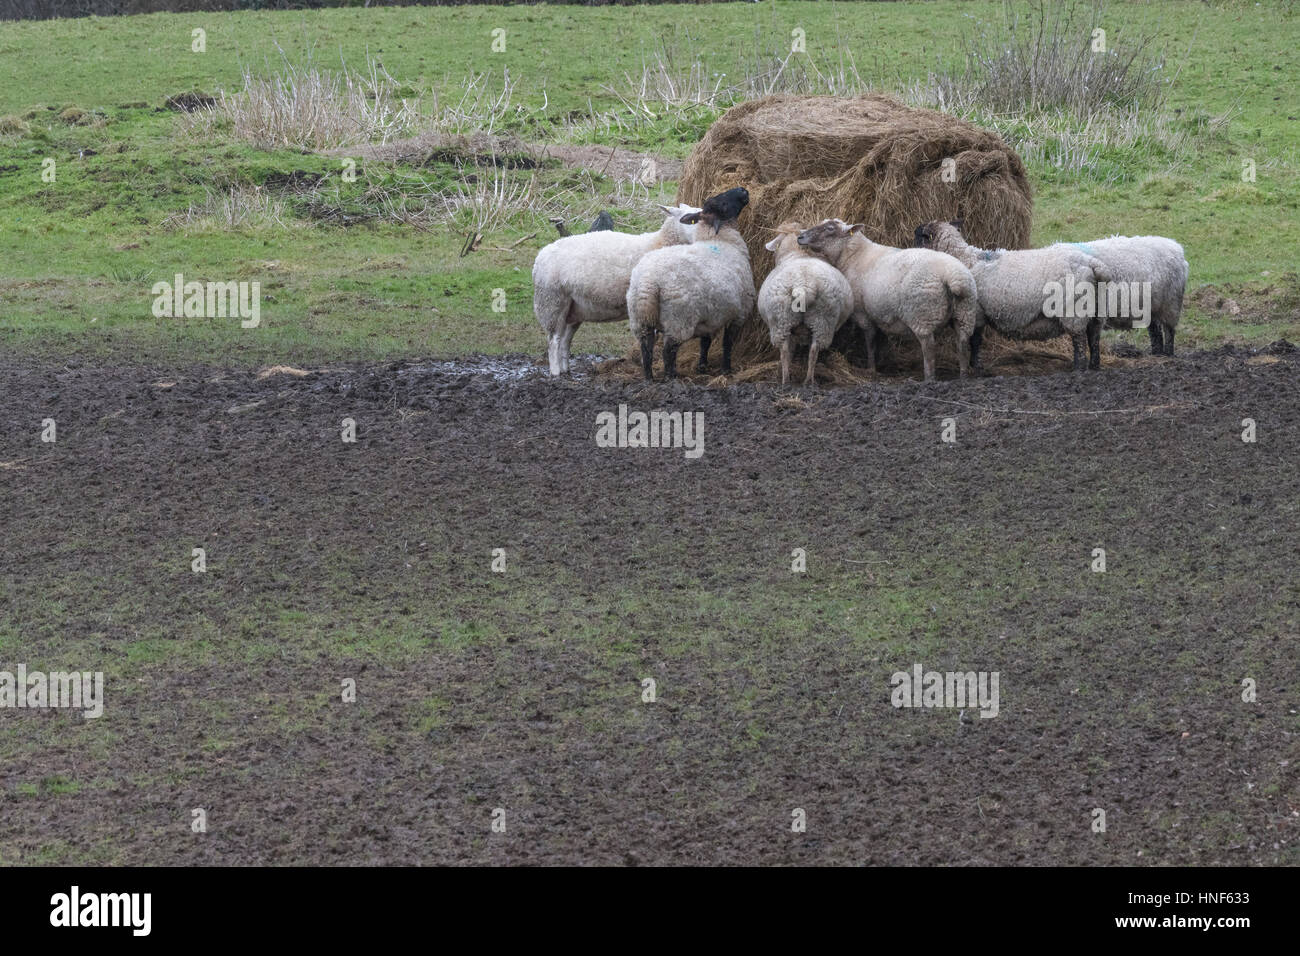 Moutons se nourrissant à partir d'une pile de fourrage fourni pendant les mois d'hiver. Parodie pour le concept de « pensée de groupe », et mentalité de troupeau, élevage Royaume-Uni. Banque D'Images